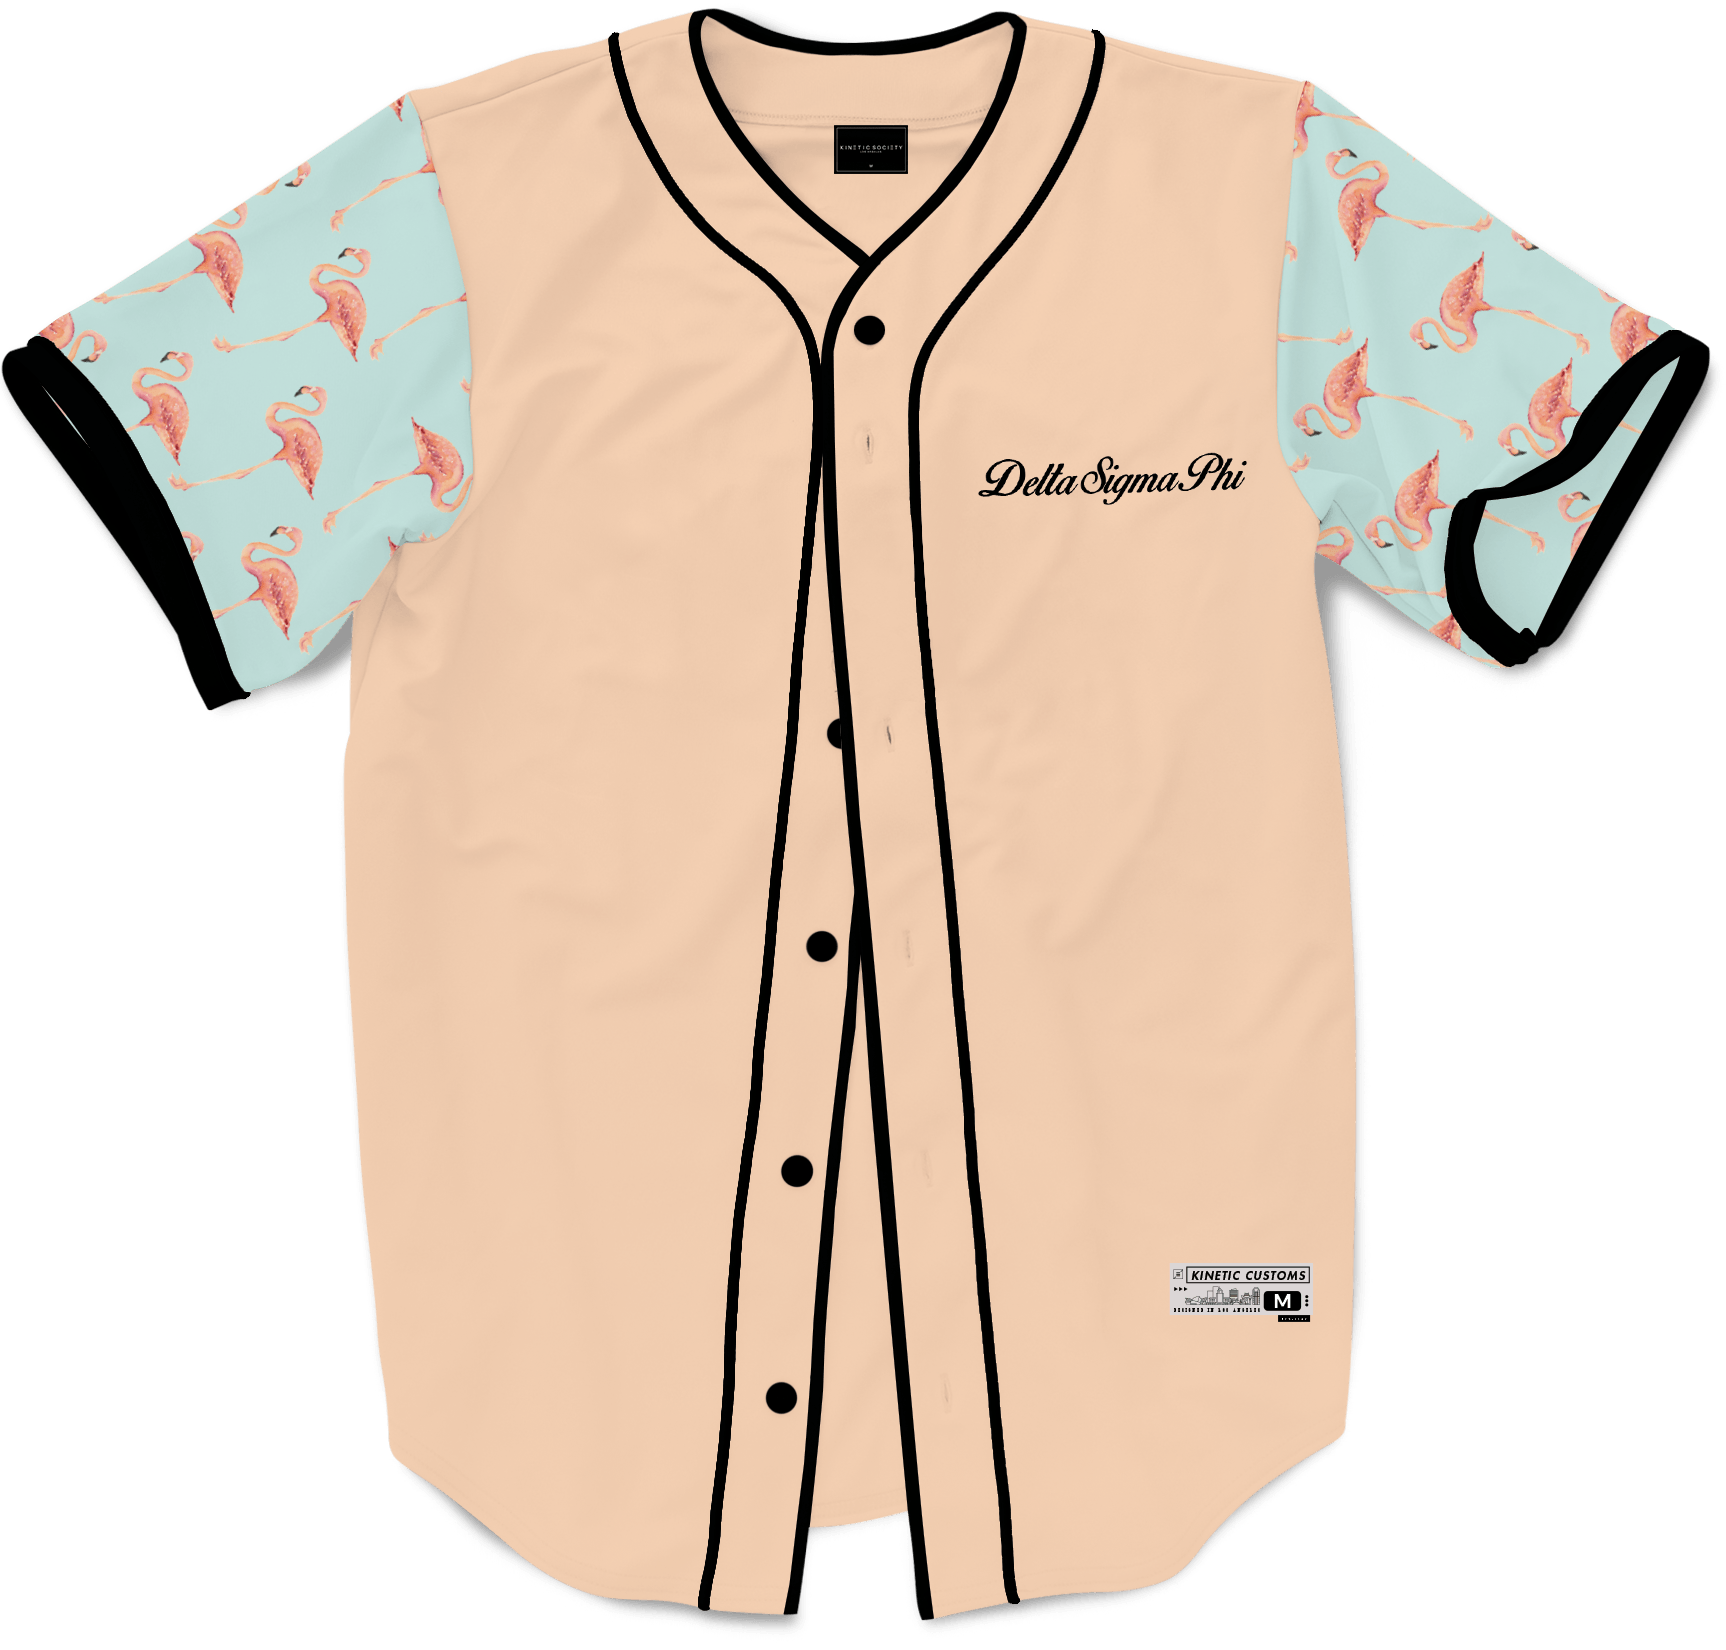 Delta Sigma Phi - Flamingo Fam Baseball Jersey - Kinetic Society